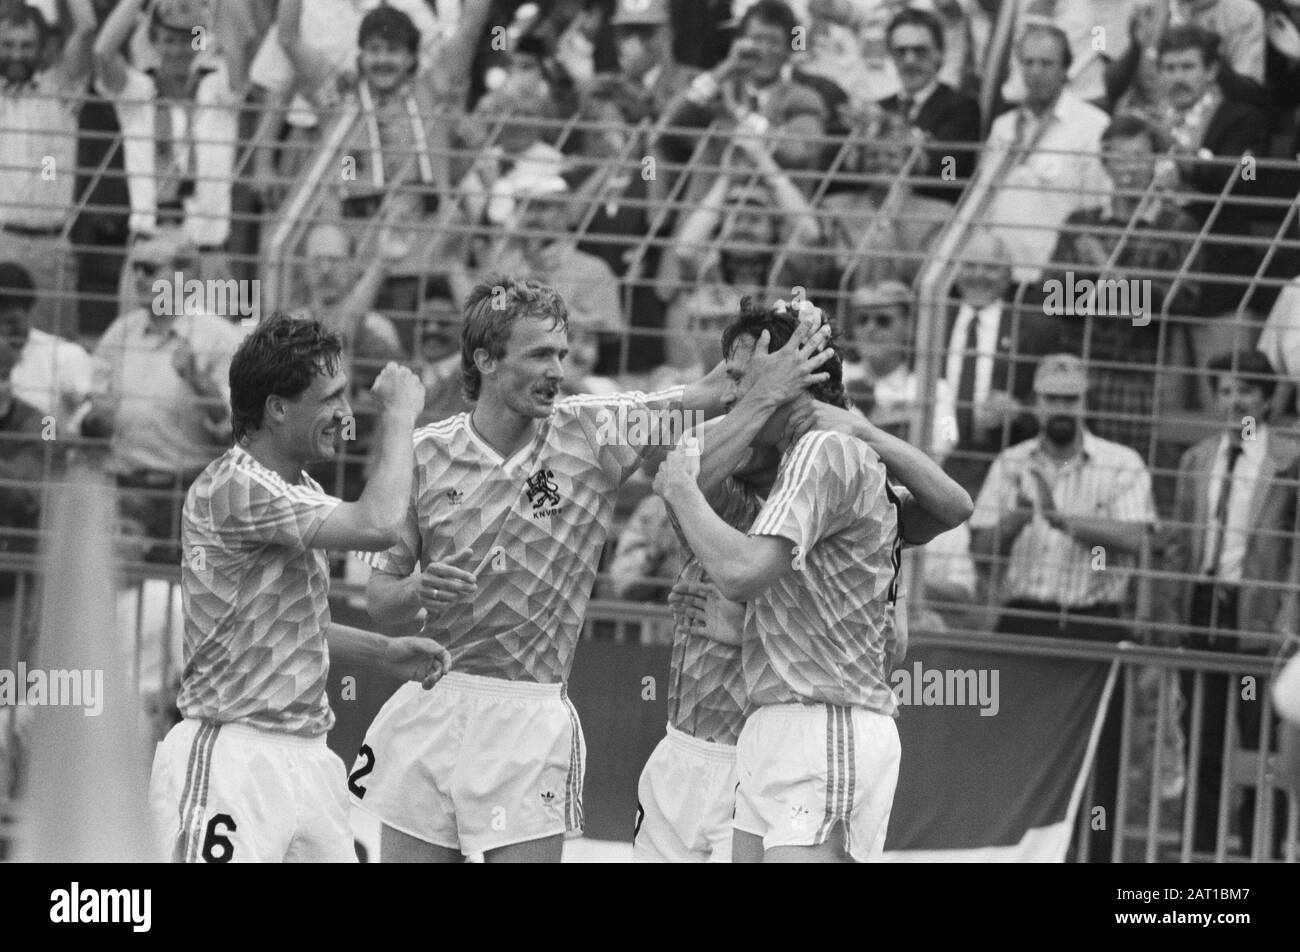 Fußball-Europameisterschaft in Westdeutschland; England gegen Niederlande 1-3 Datum: 14. Juni 1988 Ort: Deutschland, Großbritannien, Niederlande Schlagwörter: Sport, Fußball Stockfoto